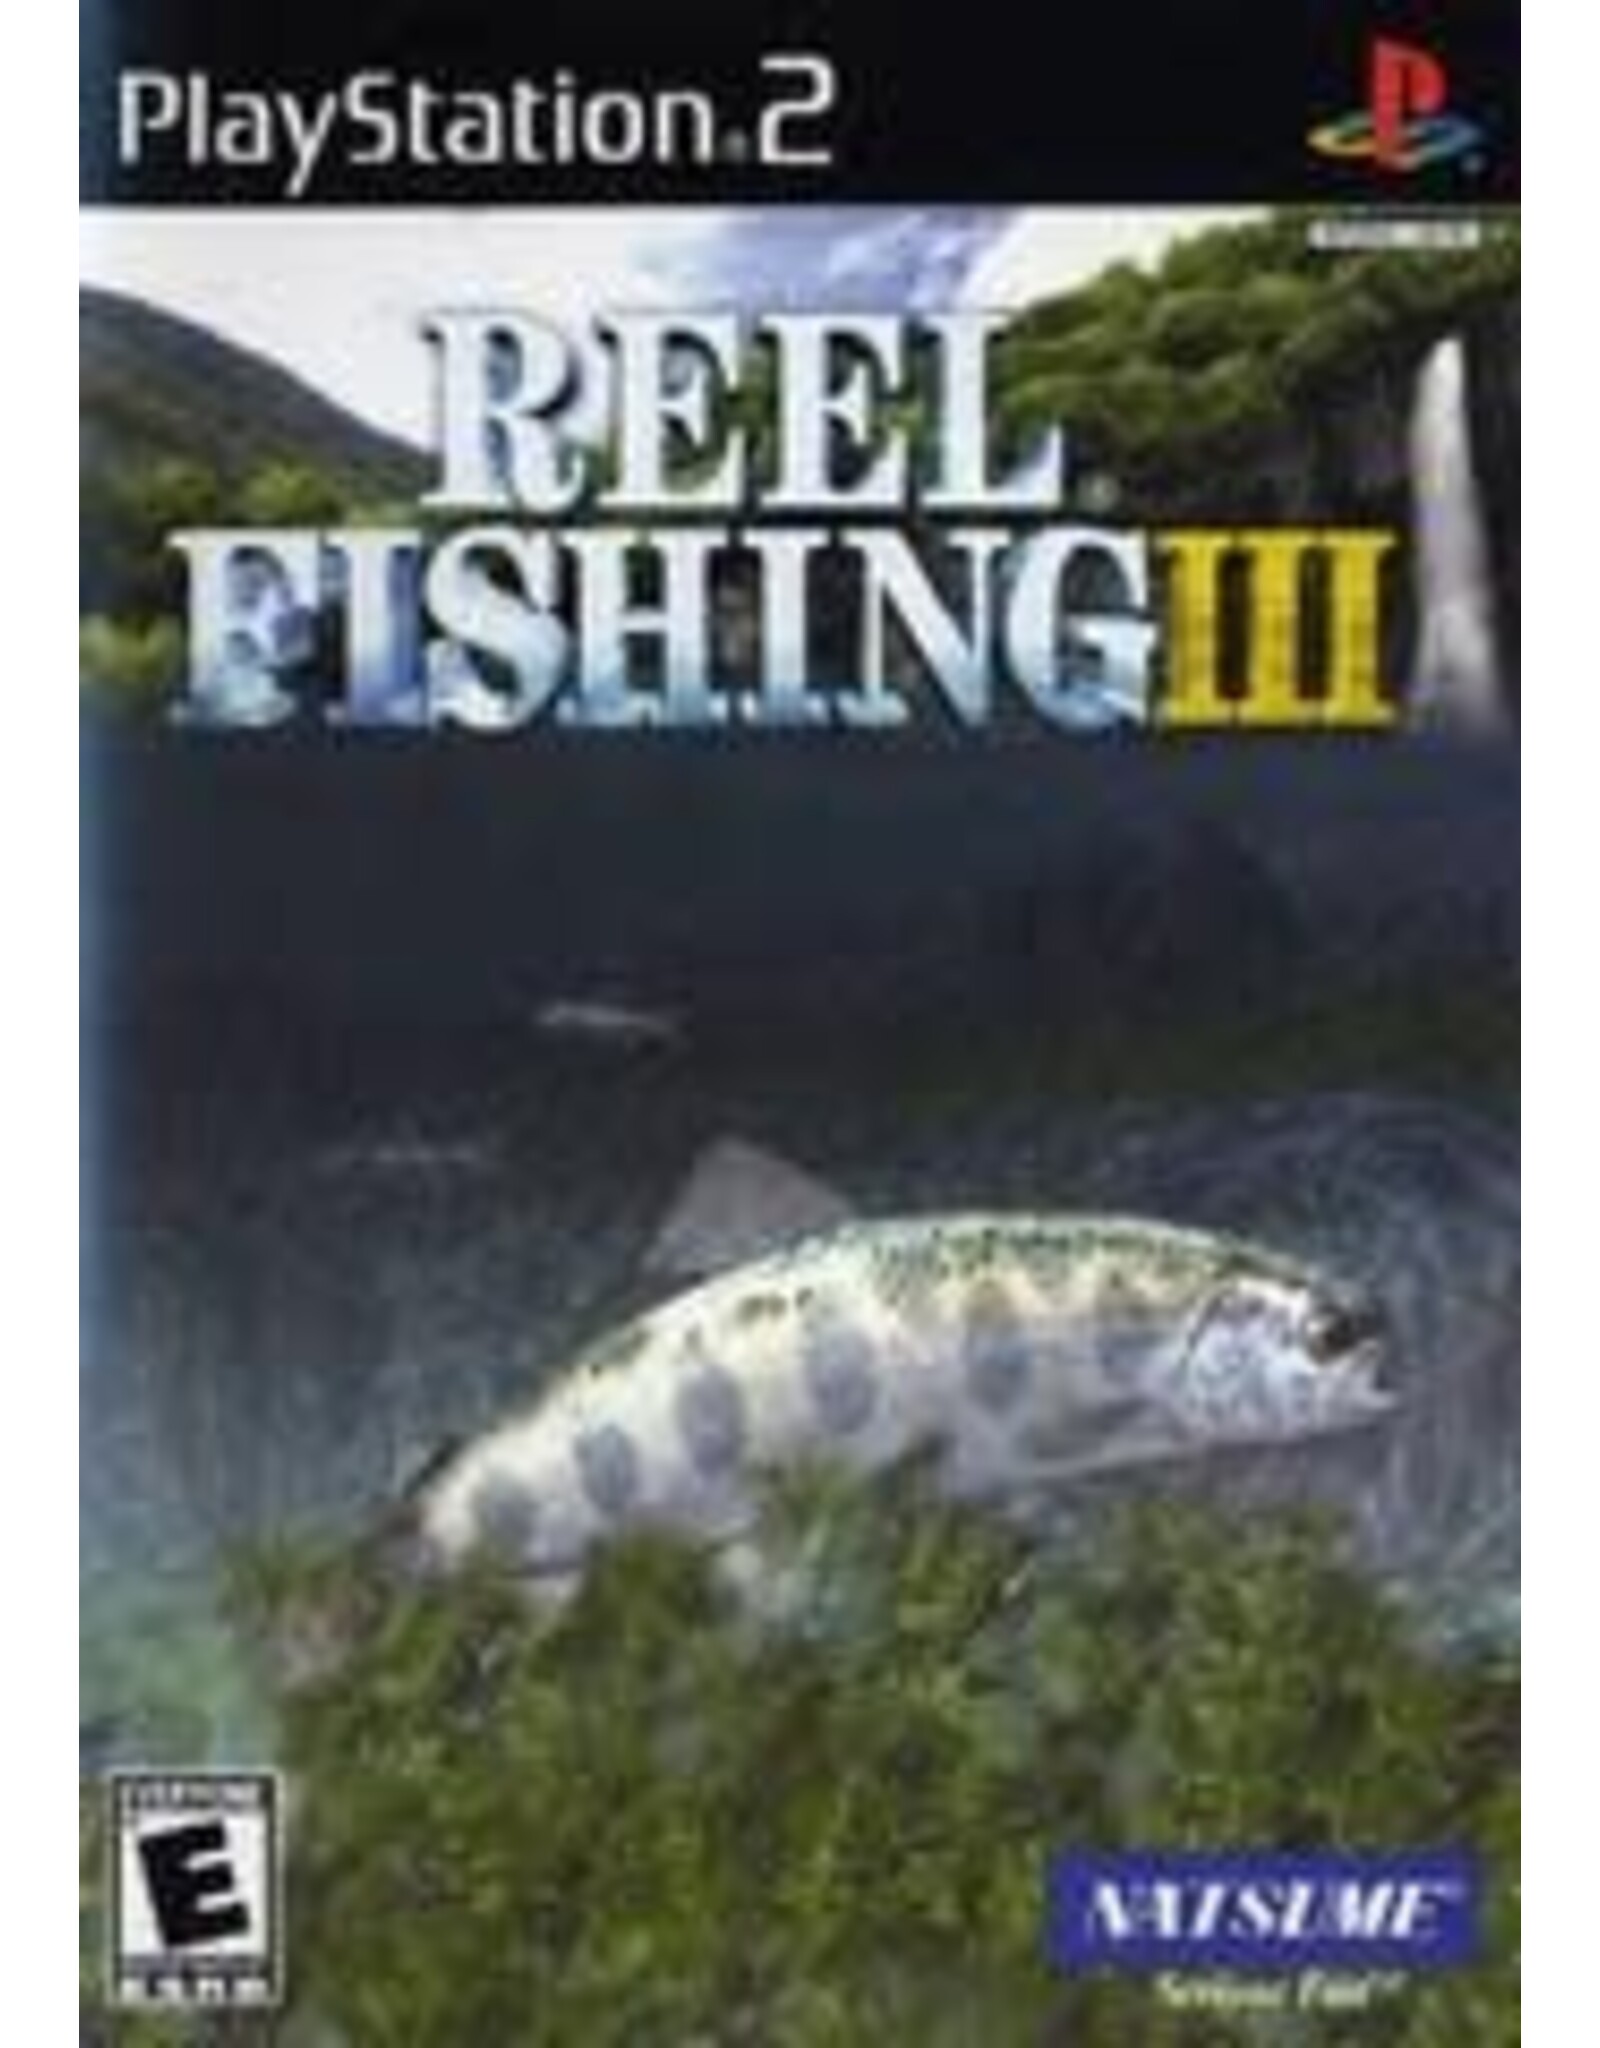 Playstation 2 Reel Fishing III (Used)